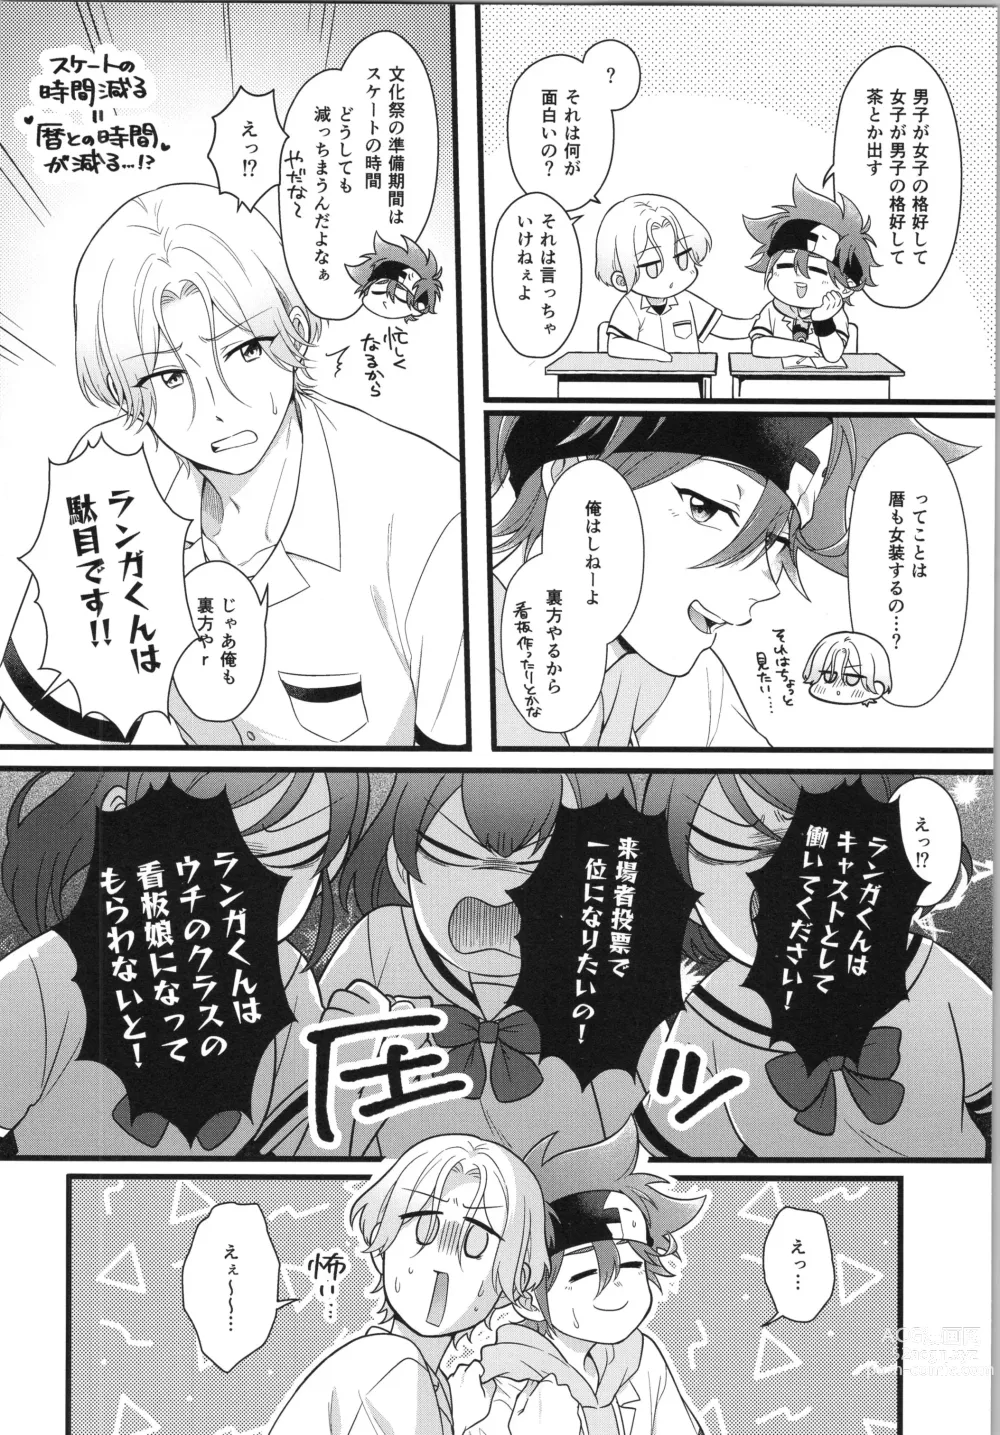 Page 5 of doujinshi Omae ga ichiban kawaī yo